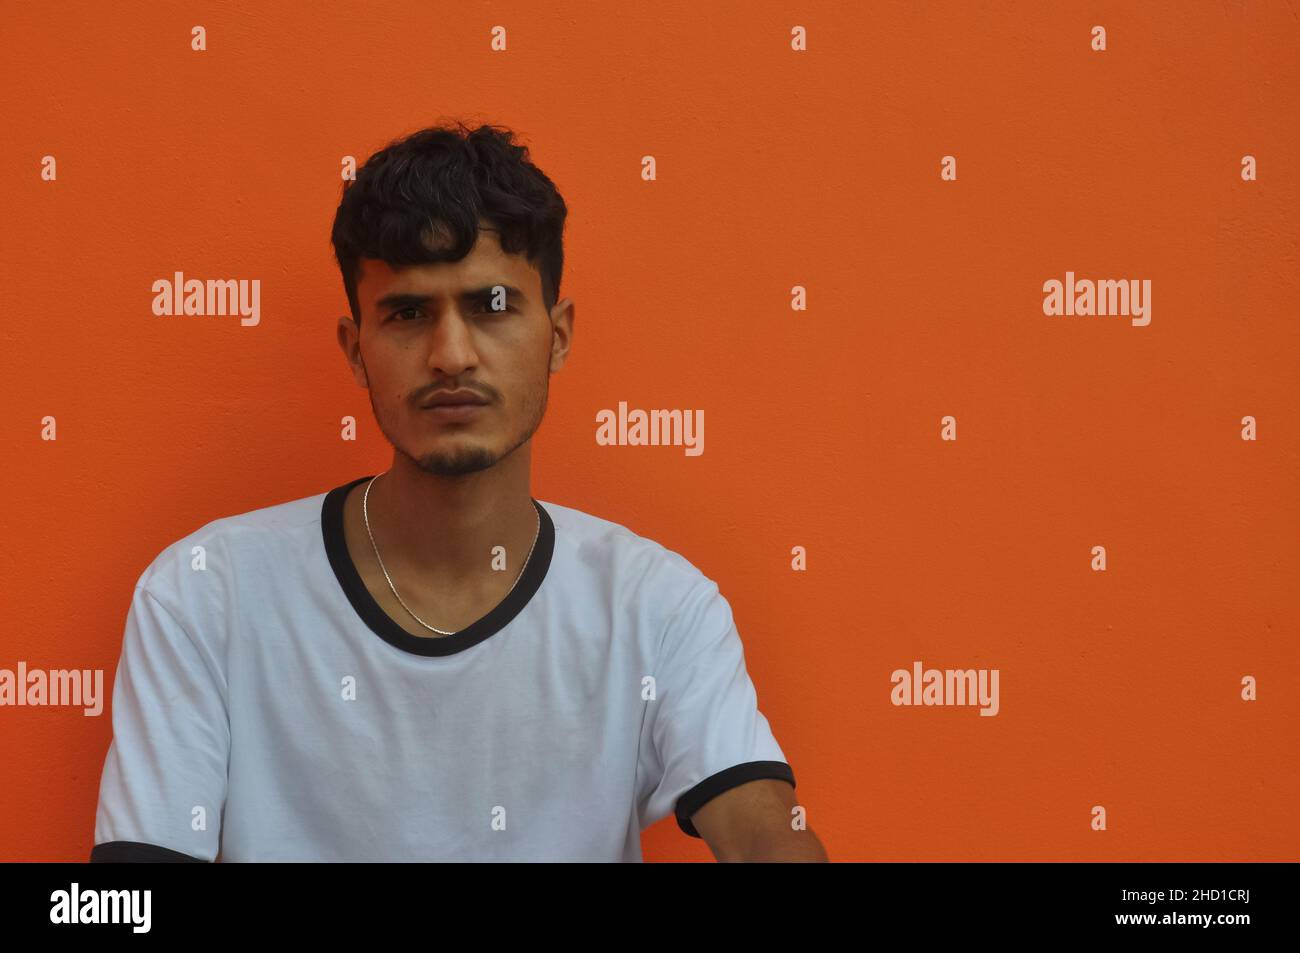 Vista frontale di un ragazzo dell'Asia meridionale che guarda la macchina fotografica, seduto su sfondo arancione della parete con spazio copia Foto Stock